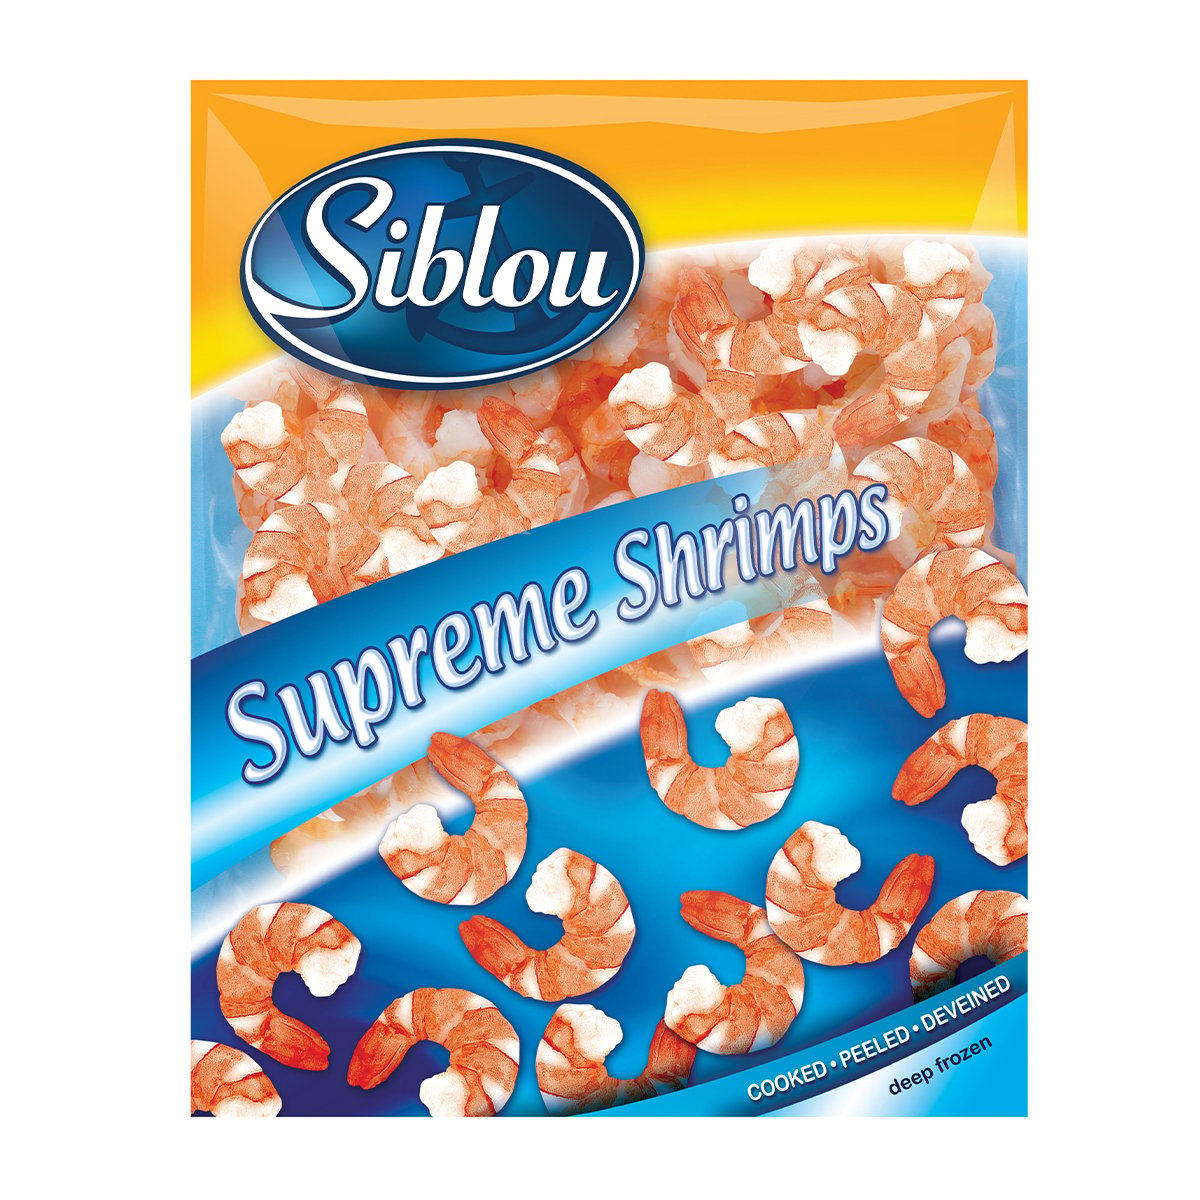 Buy Siblou Supreme Shrimps 250 g Online at Best Price | Frozen Food | Lulu UAE in UAE